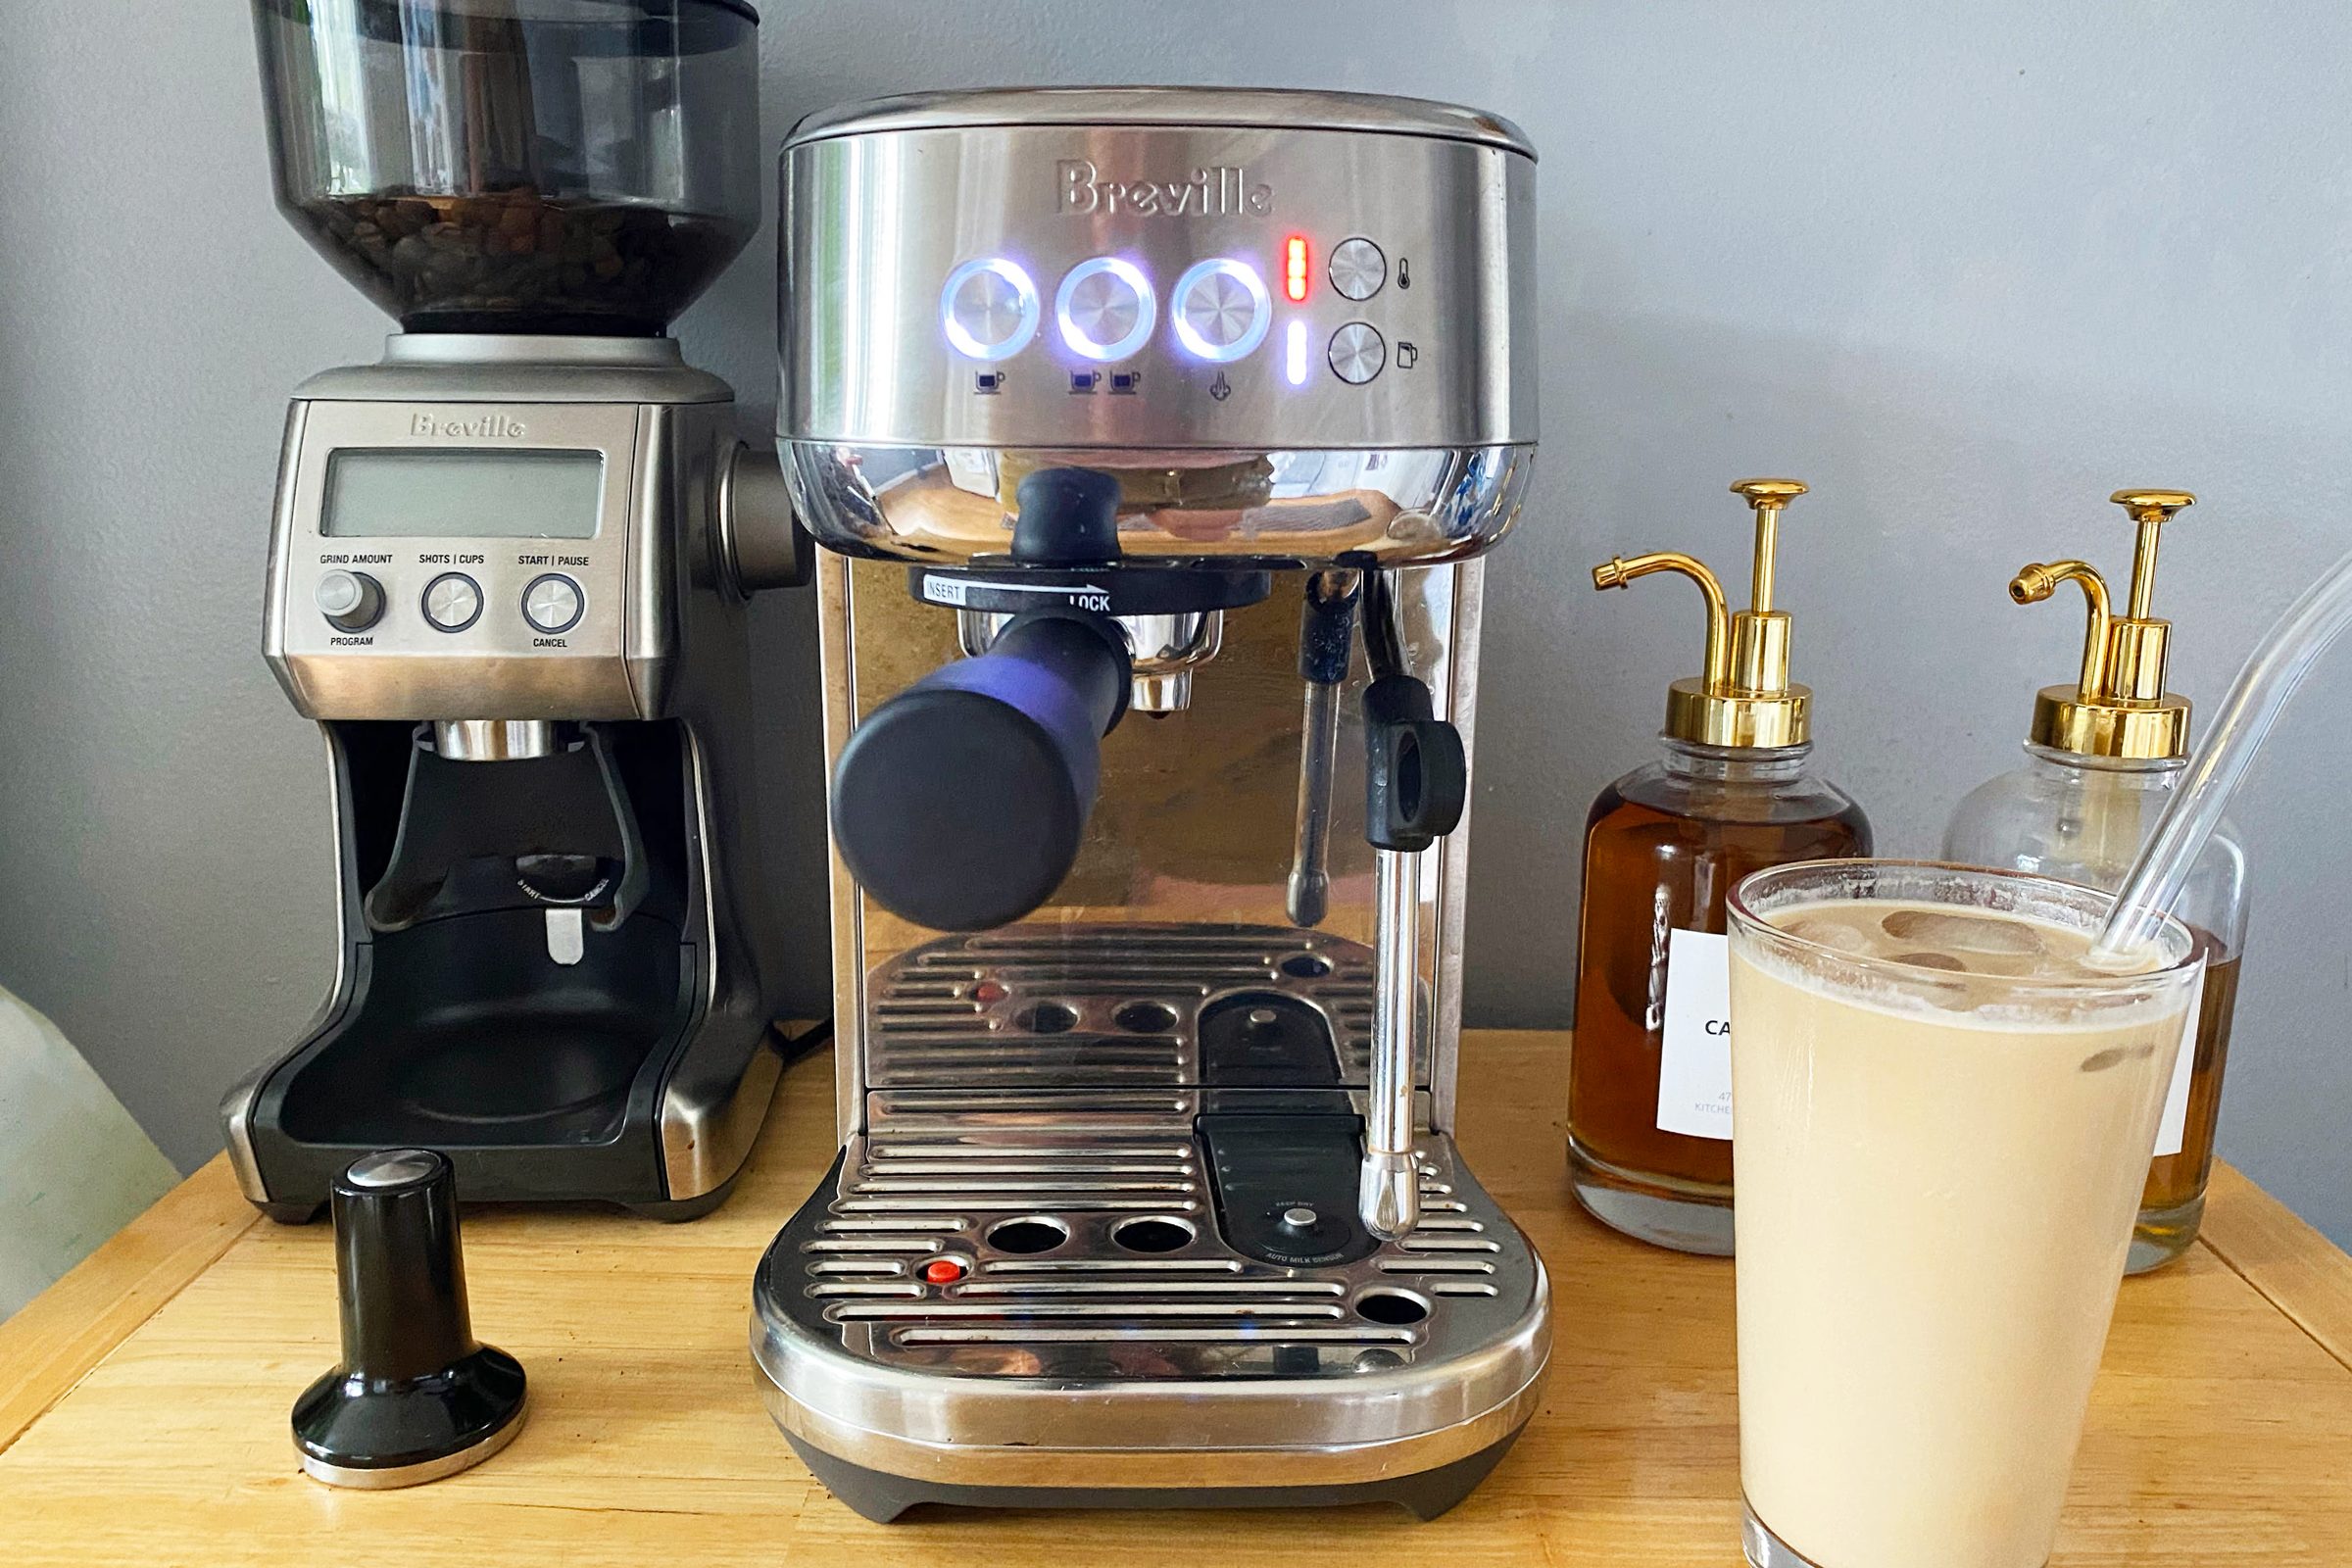 Bambino Plus - Small Home Espresso Machine, Breville